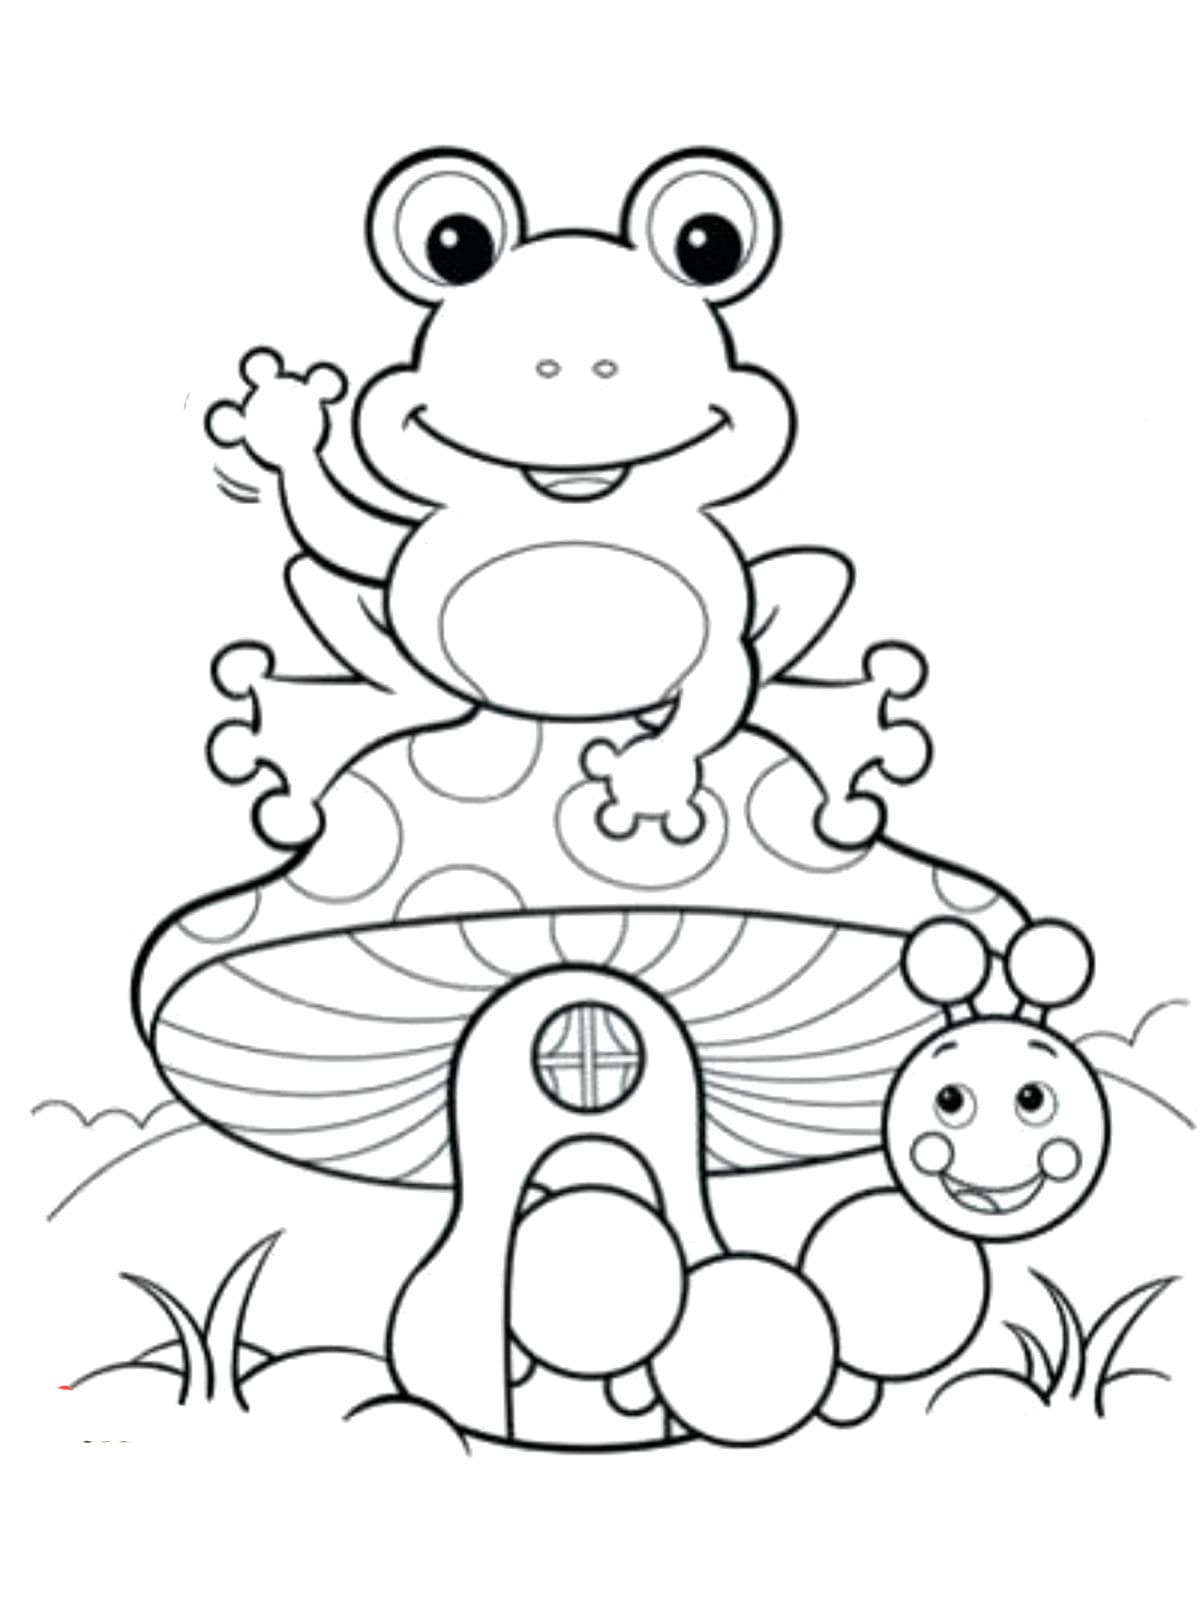 귀여운 개구리와 벌레 coloring page